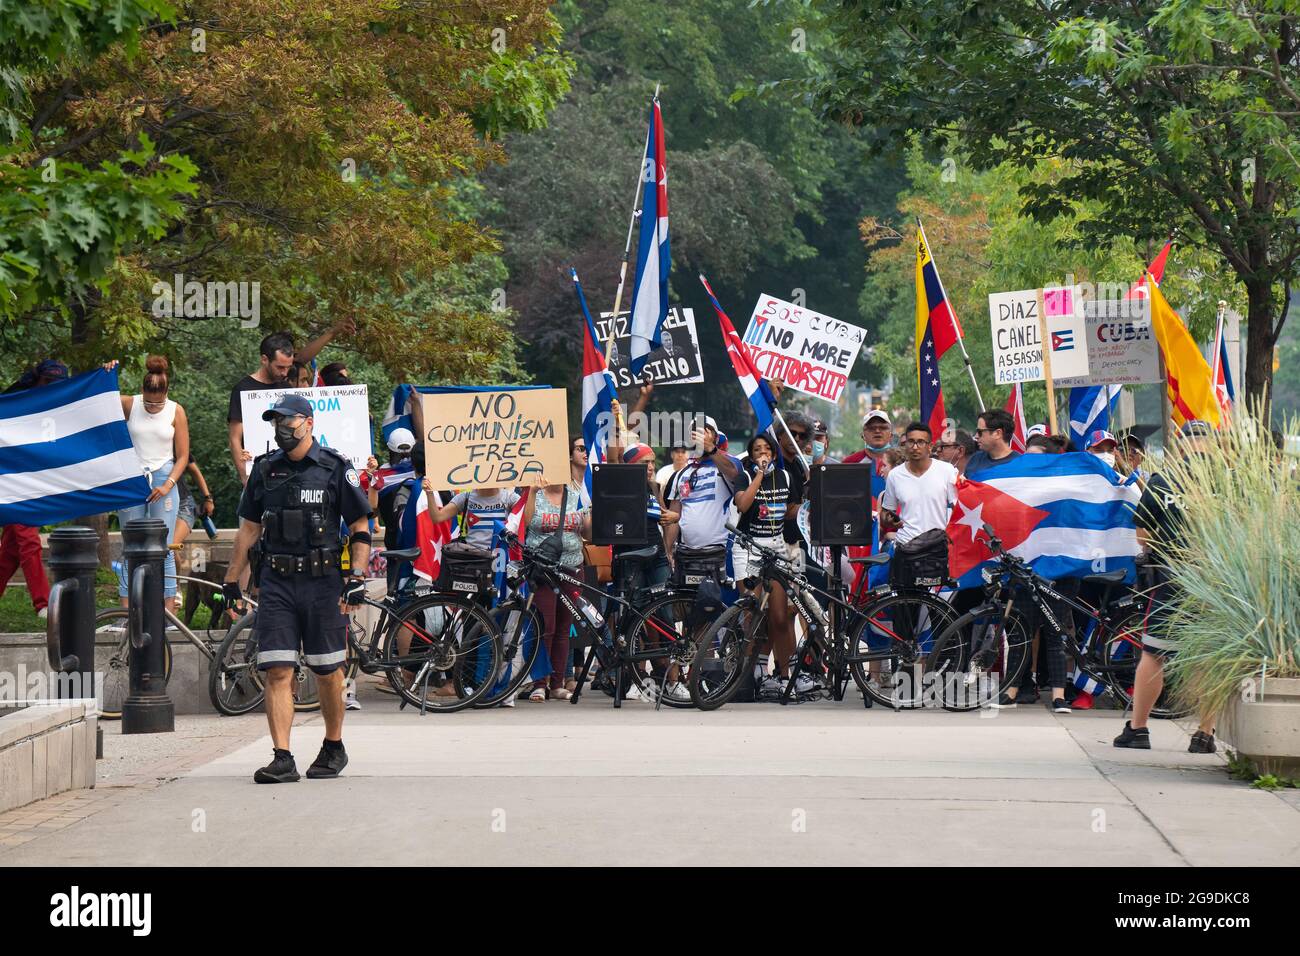 Kubanisch-kanadische Bürger, die ein freies Kuba forderten, stehen hinter einer Polizeiblockade, während sie gegen ein Pro-Kommunismus-Ereignis in Toronto, Kanada, protestierten. Stockfoto